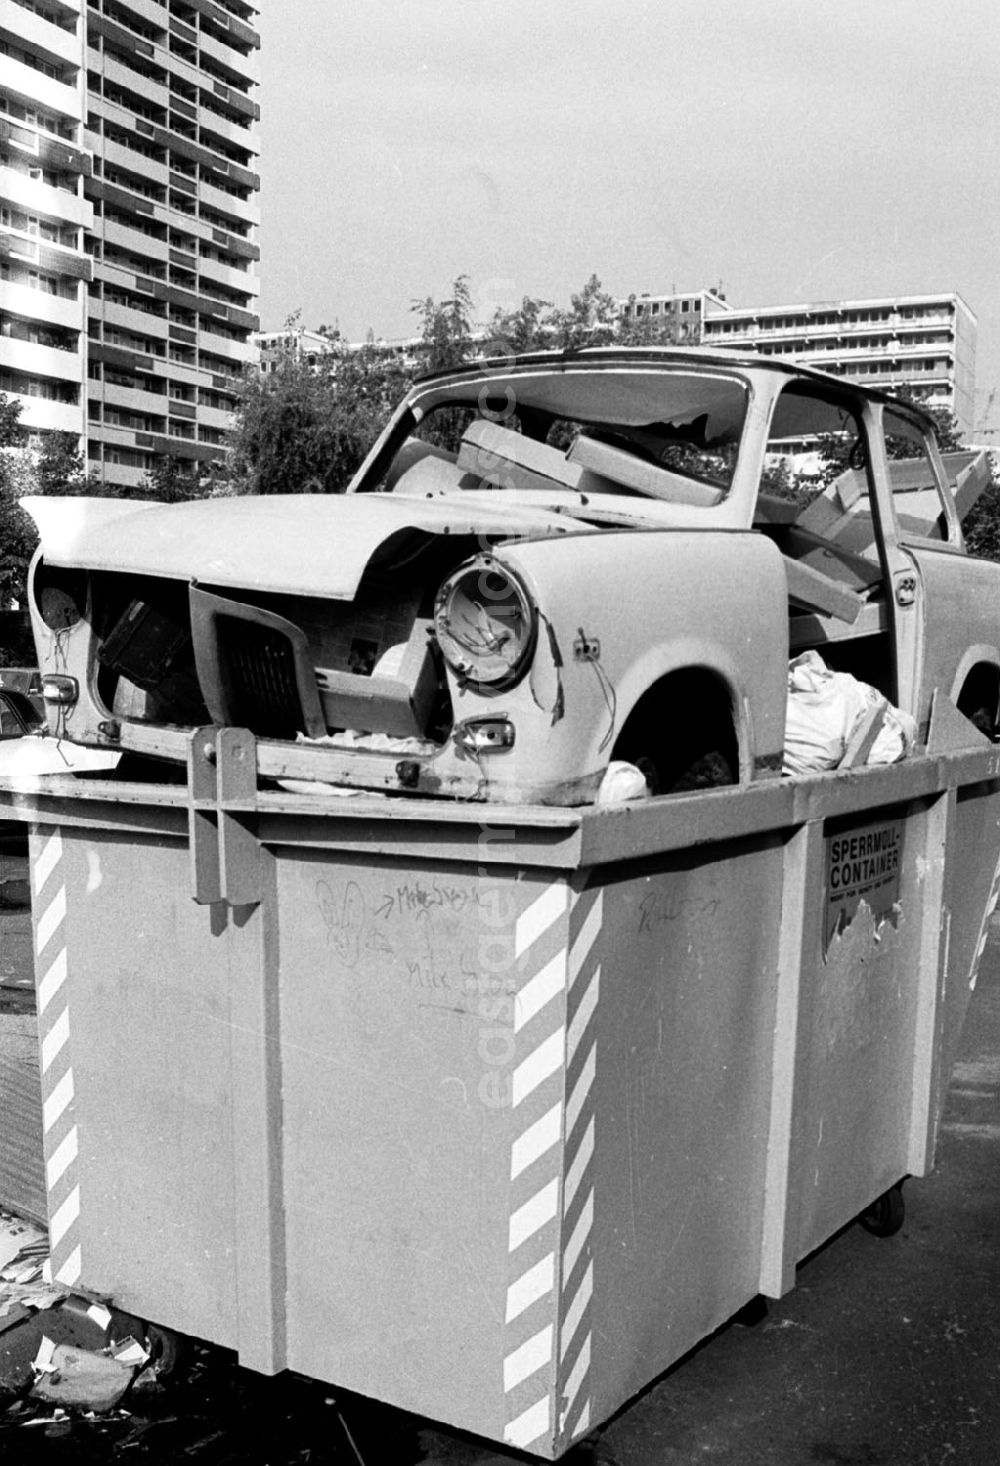 GDR photo archive: Berlin - Ein Auto vom Typ Trabant in einem Sperrmüllcontainer an der Jerusalem Strasse.